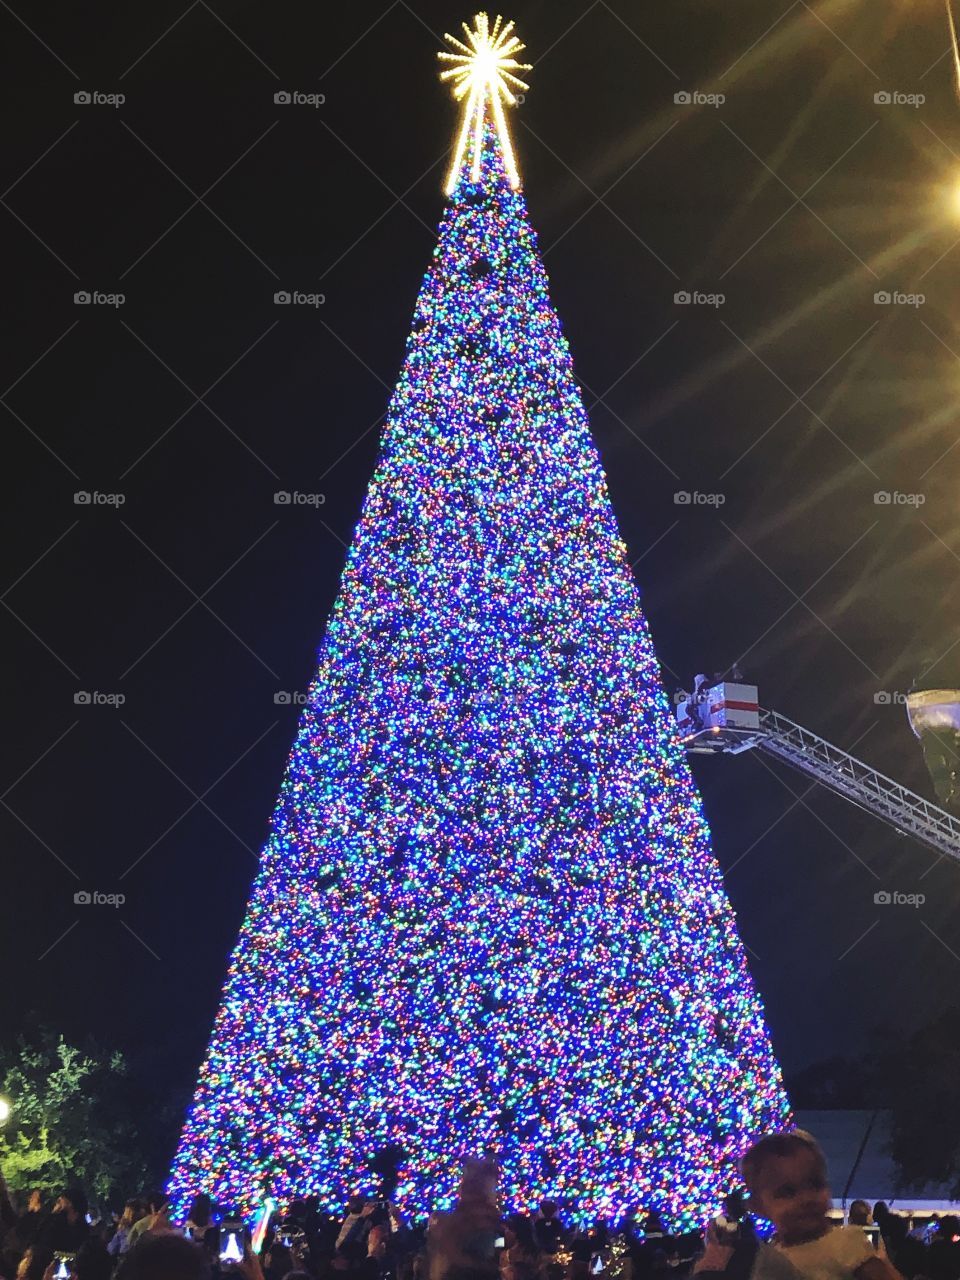 Tree of lights 